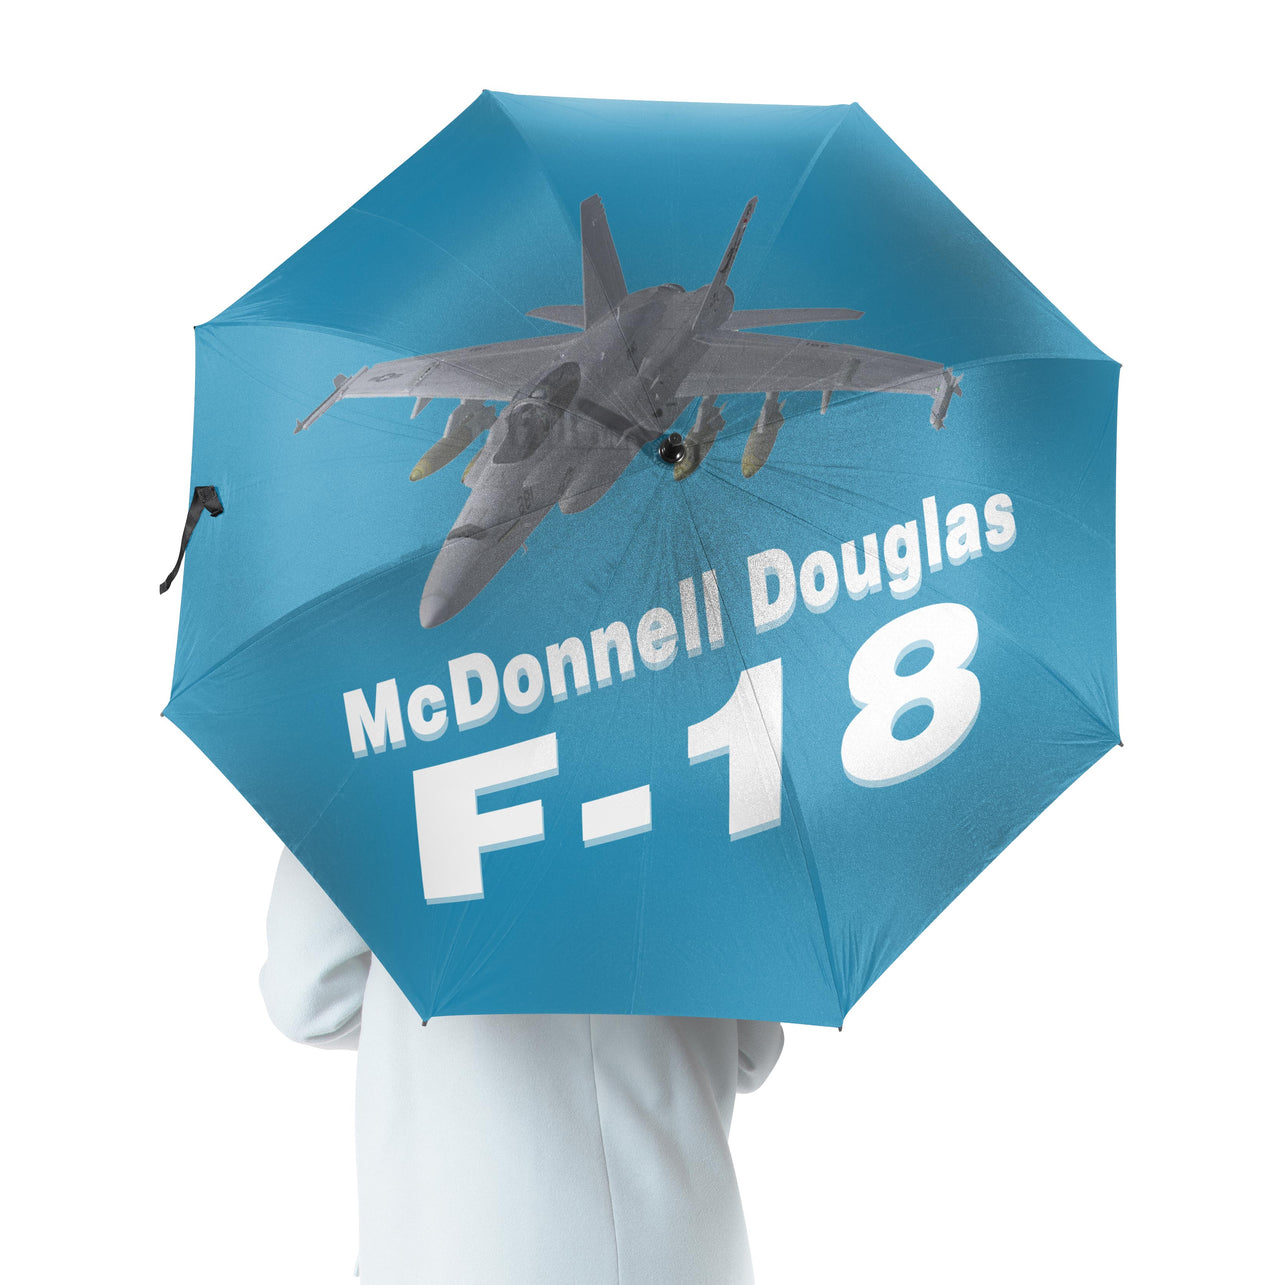 The McDonnell Douglas F18 Designed Umbrella